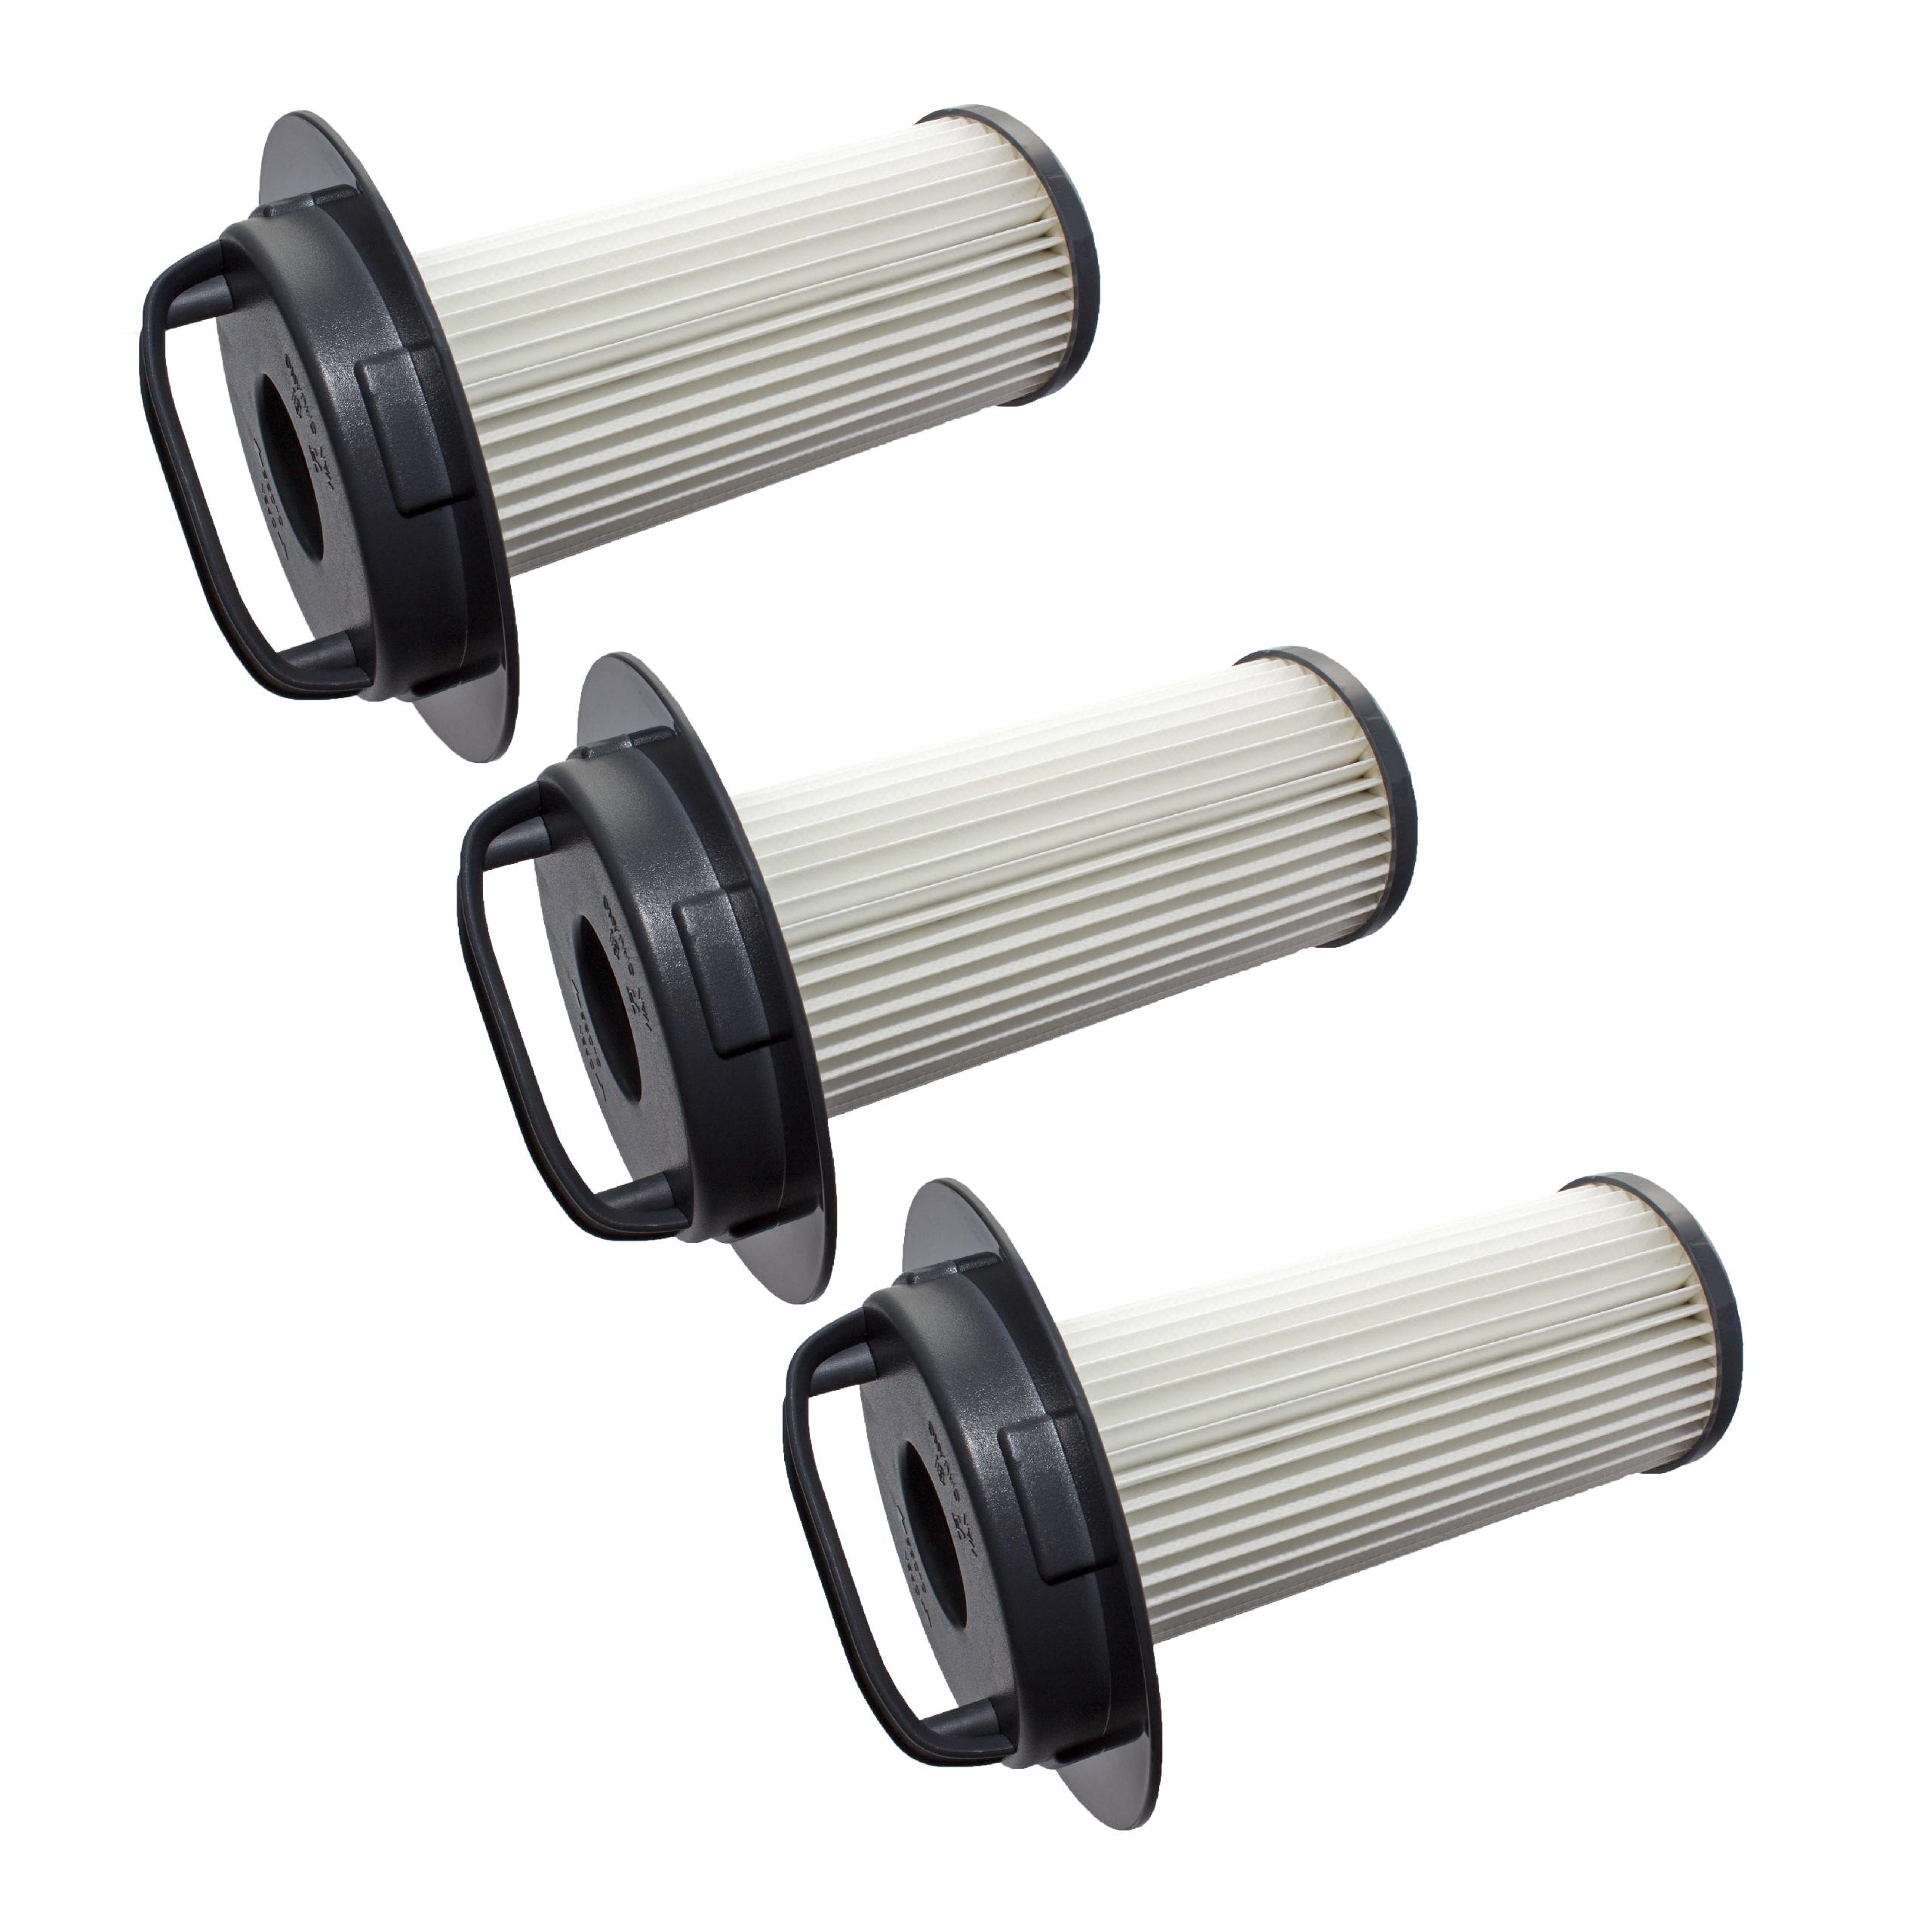 3x Filtres remplace Philips 432200524860, FC8048, 432200517520 pour aspirateur - filtre HEPA